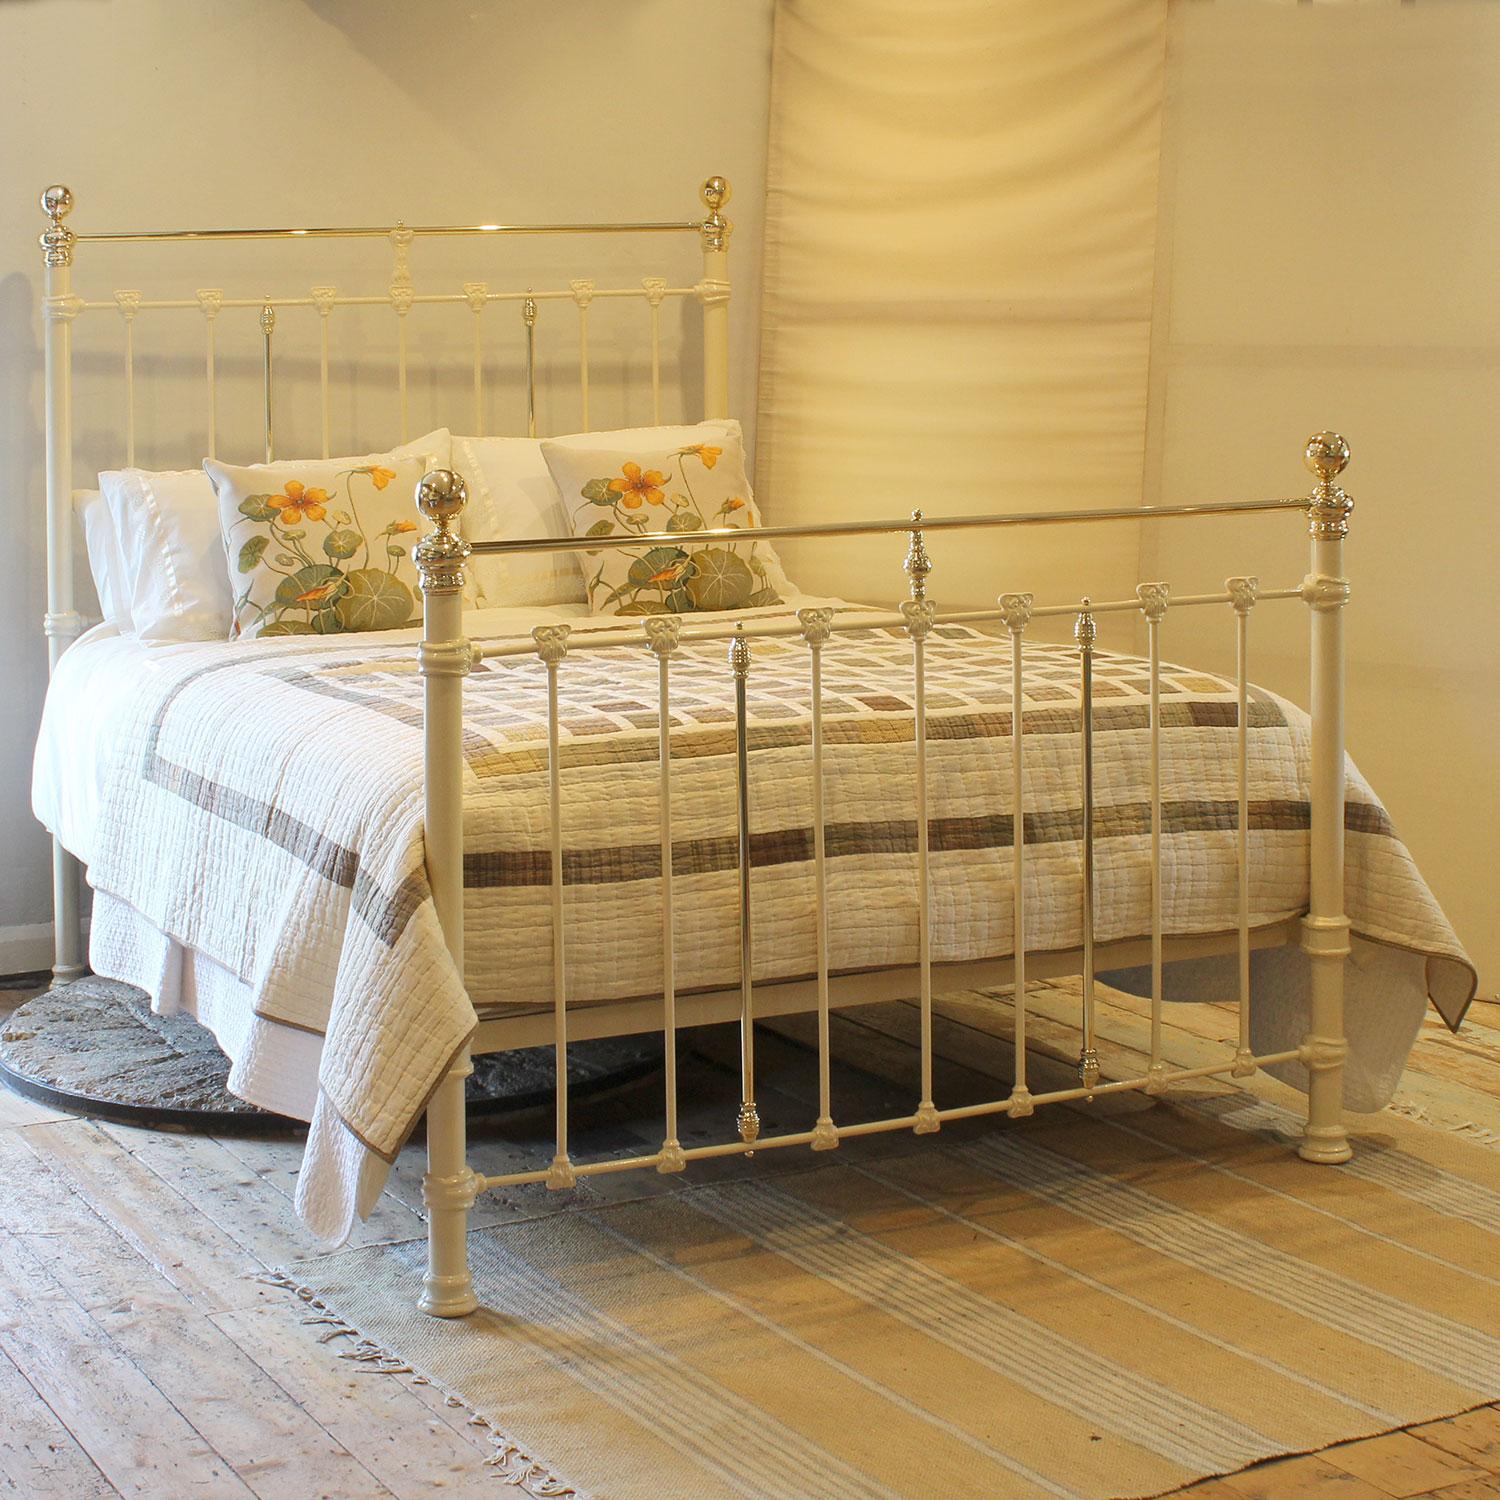 Ein attraktives antikes Bett aus Gusseisen in cremefarbener Farbe mit geraden Messinggeländern und dekorativen Gussteilen, die florale Jugendstilmotive darstellen.

Dieses Bett kann mit einem UK-King-Size- oder US-Queen-Size-Matratzen-Set (5ft, 60in